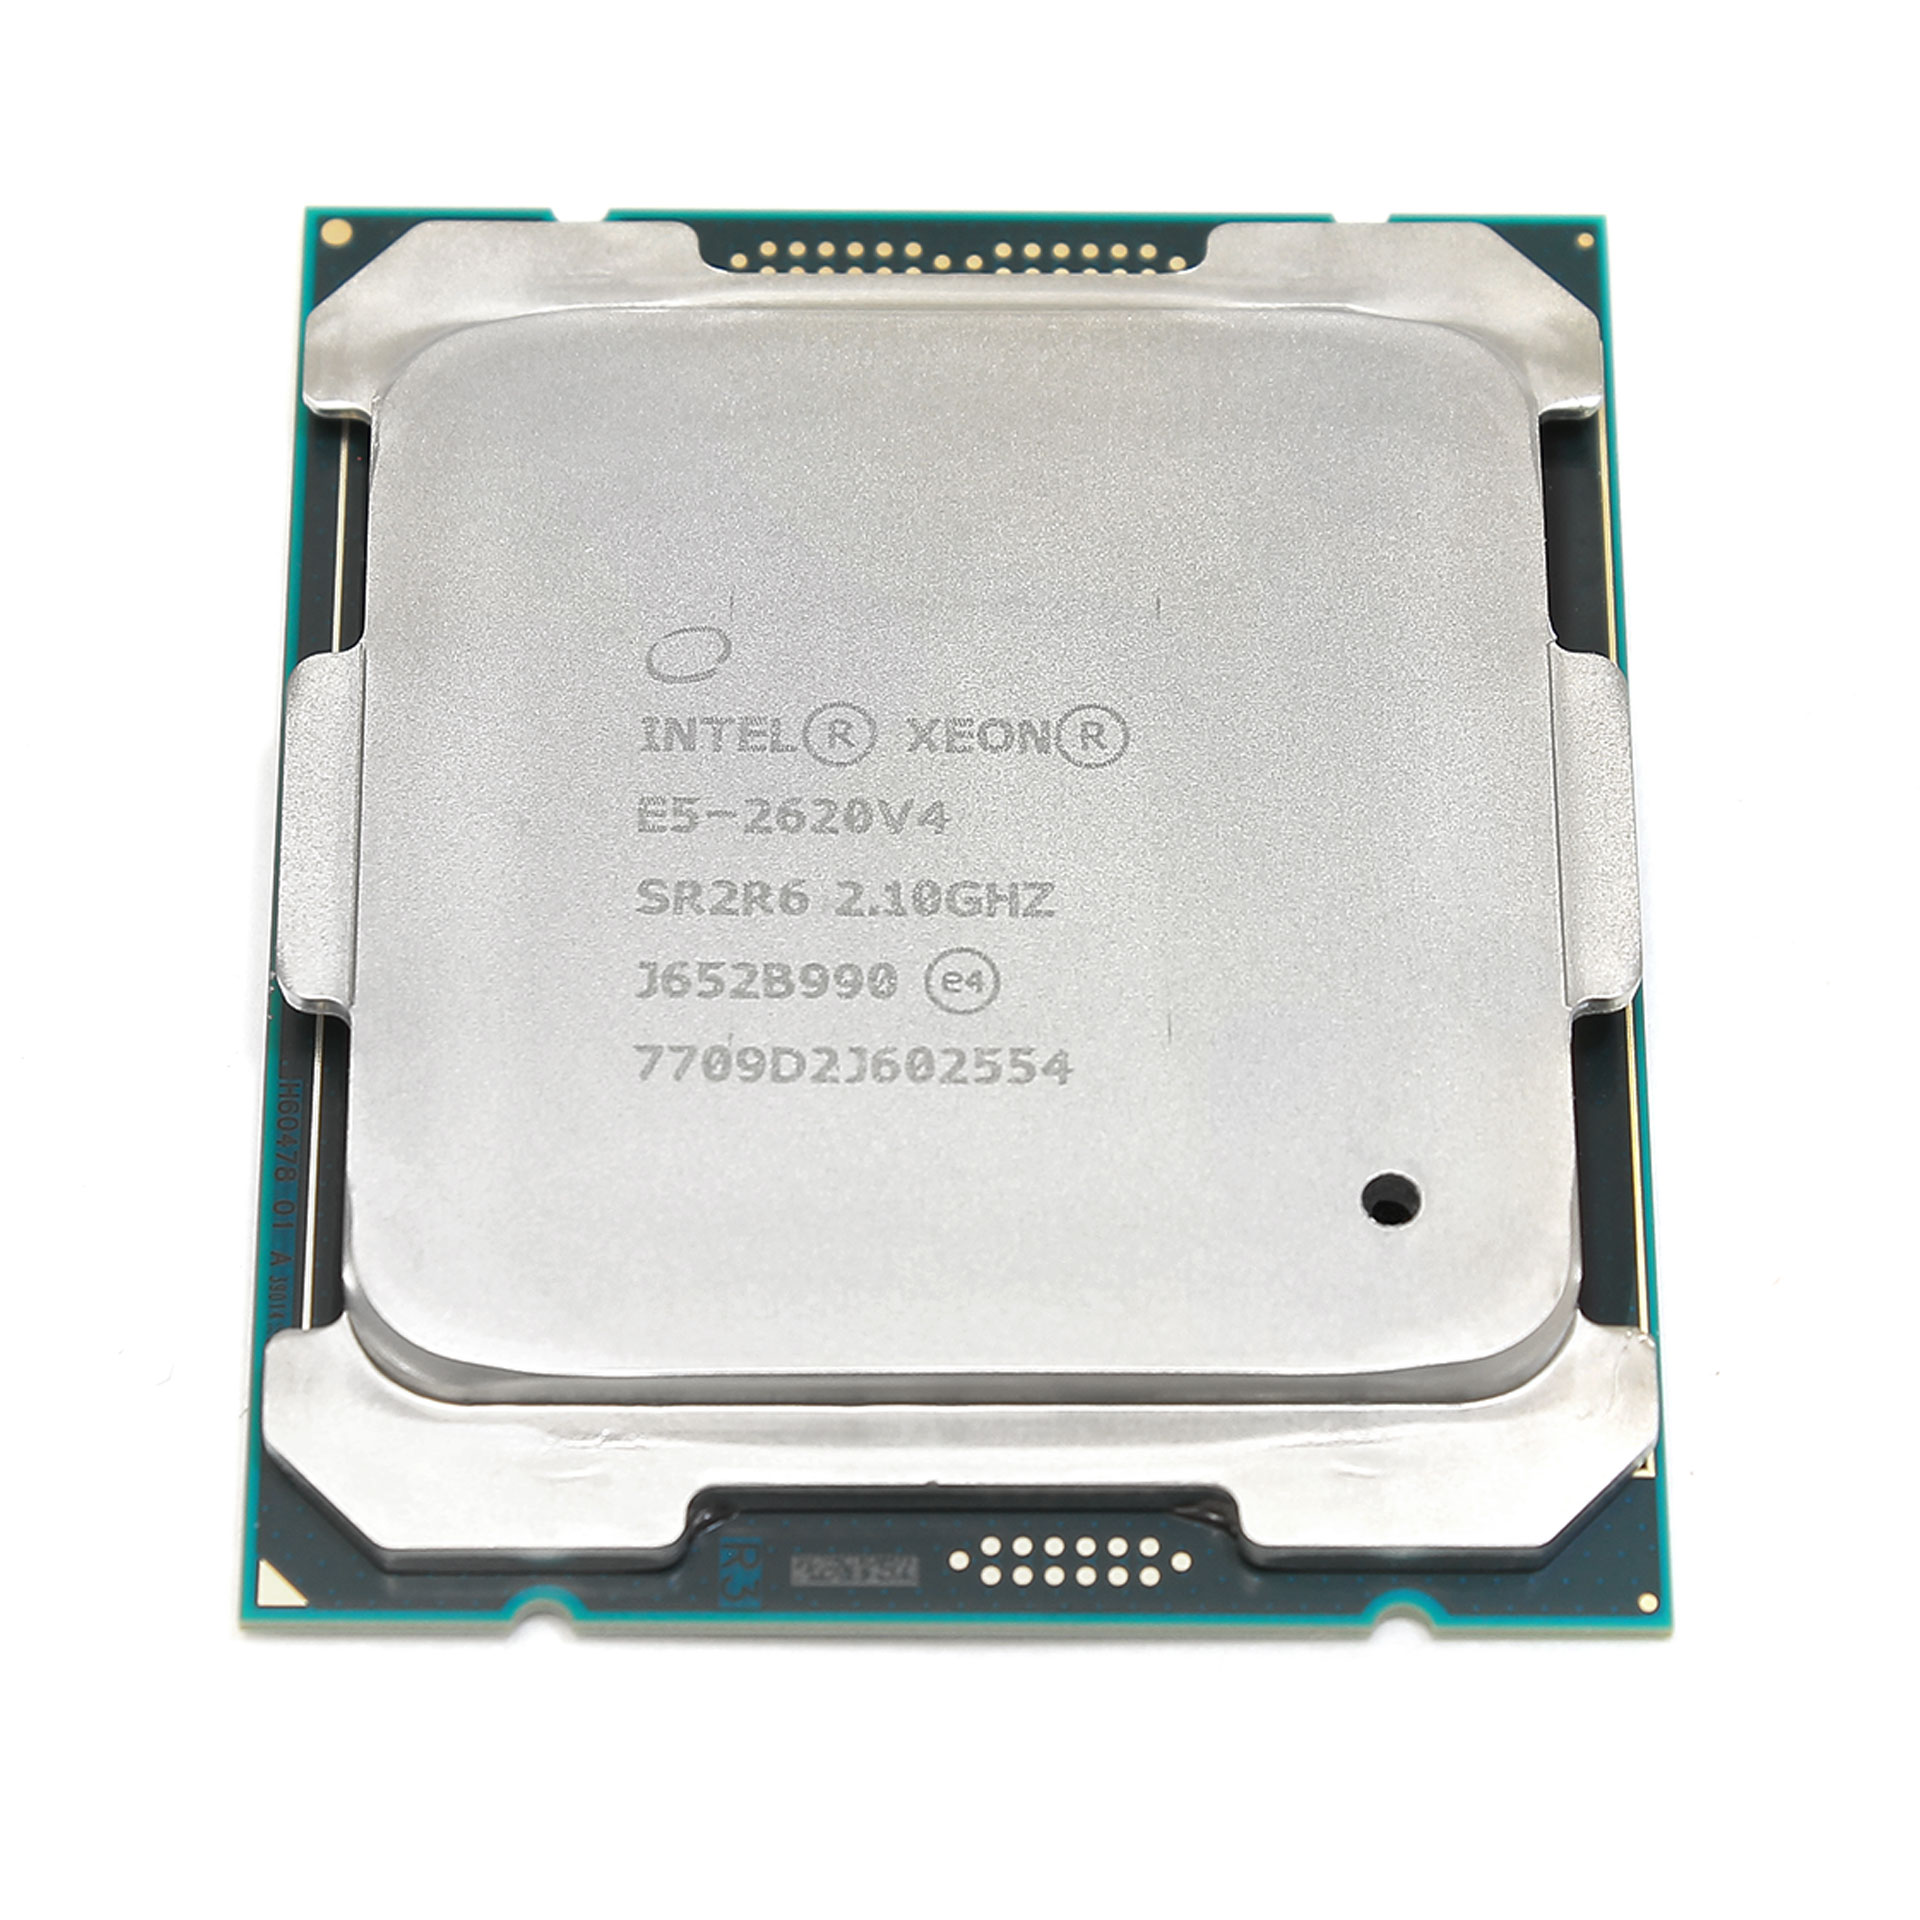 Processor CPU Intel XEON E5-2620 V4 SR2R6 2.1 GHz